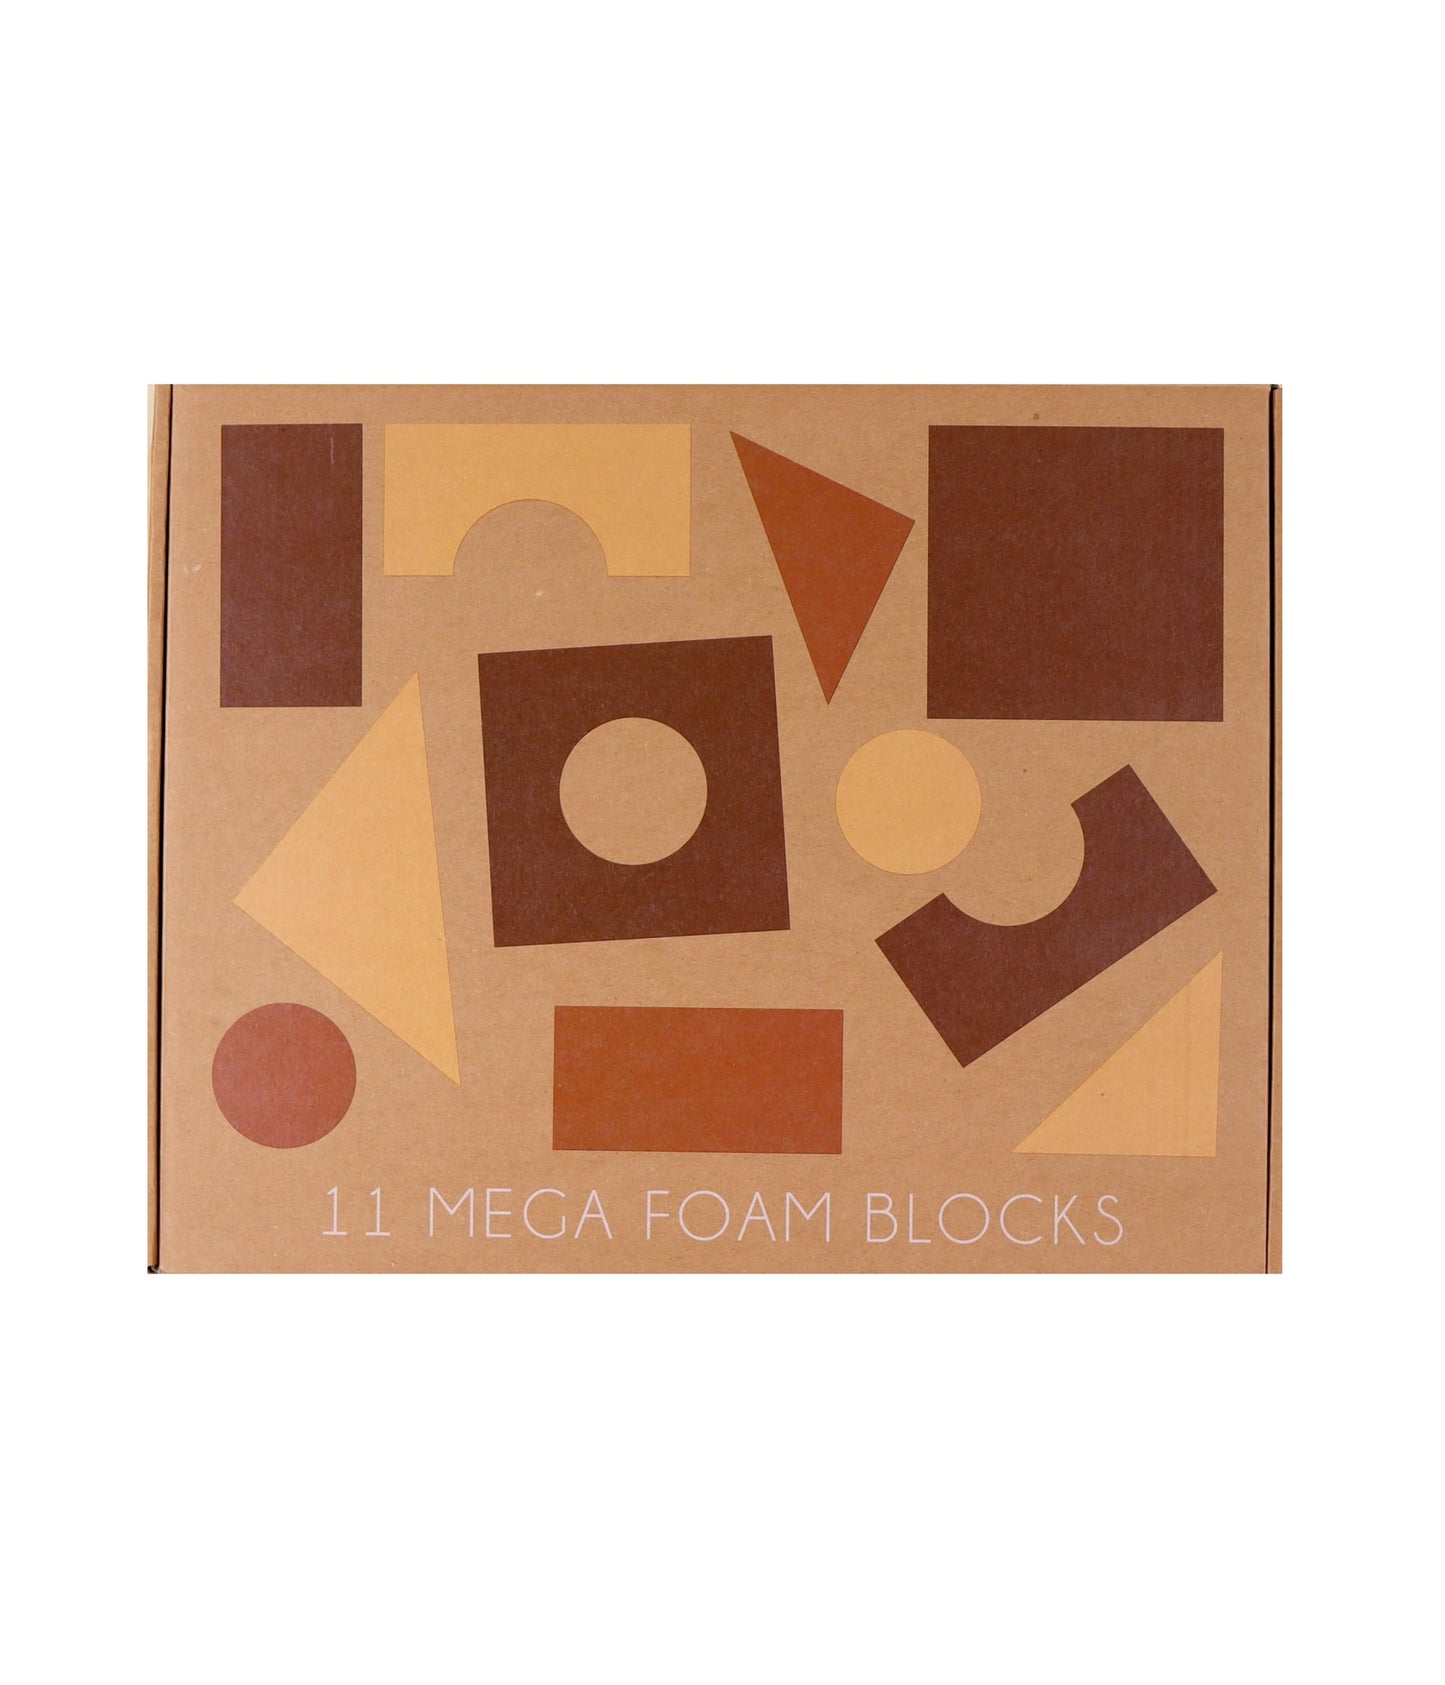 Building blocks EVA foam - MEGA 